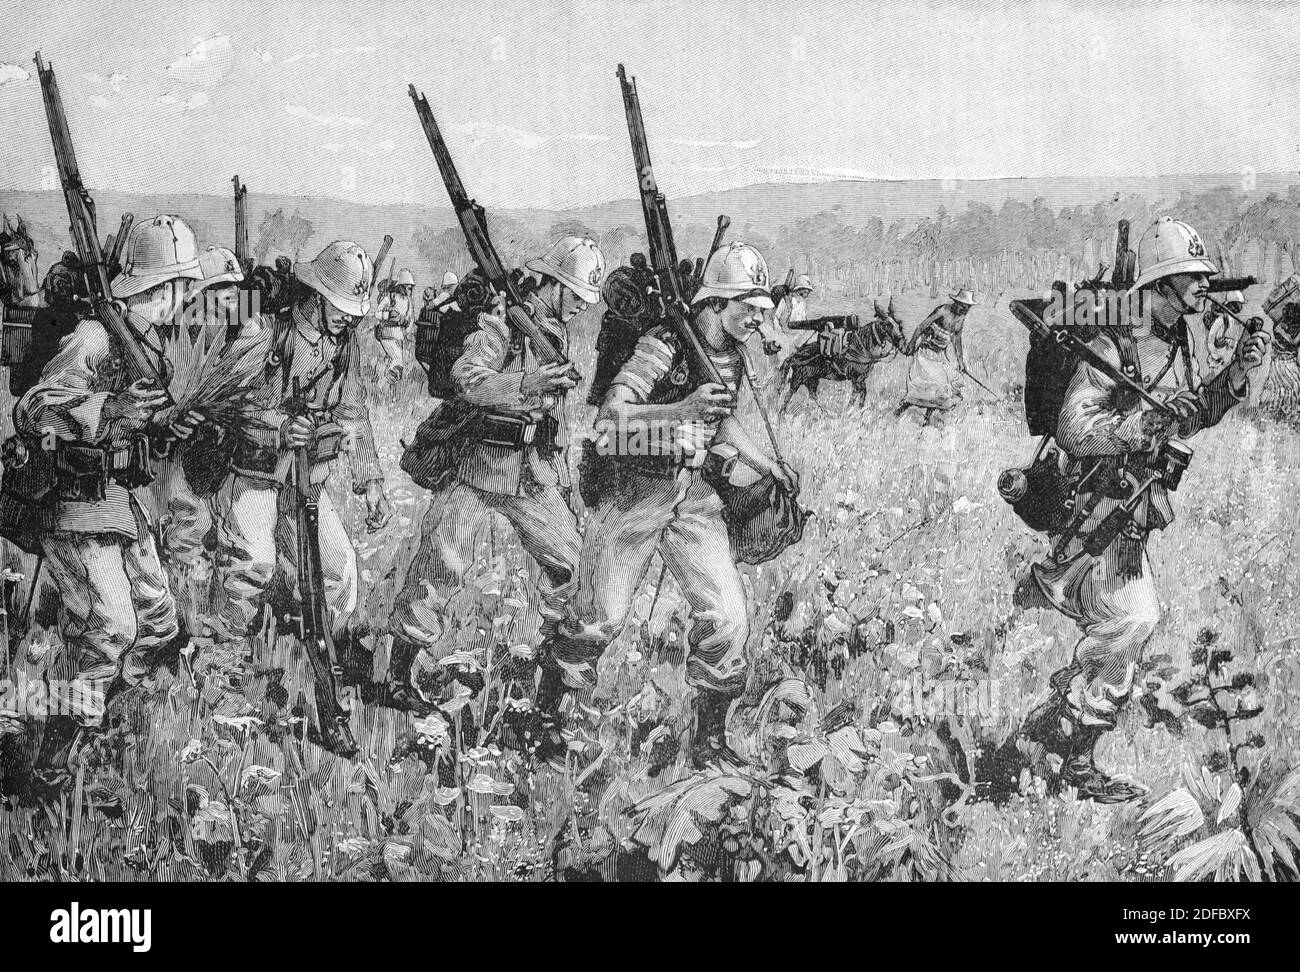 Französische Truppen oder Soldaten marschieren während des Franco-Hova-Krieges, des Kolonialkrieges oder der Eroberung Madagaskars (Engr 1895) Vintage Engraving oder Illustration Stockfoto